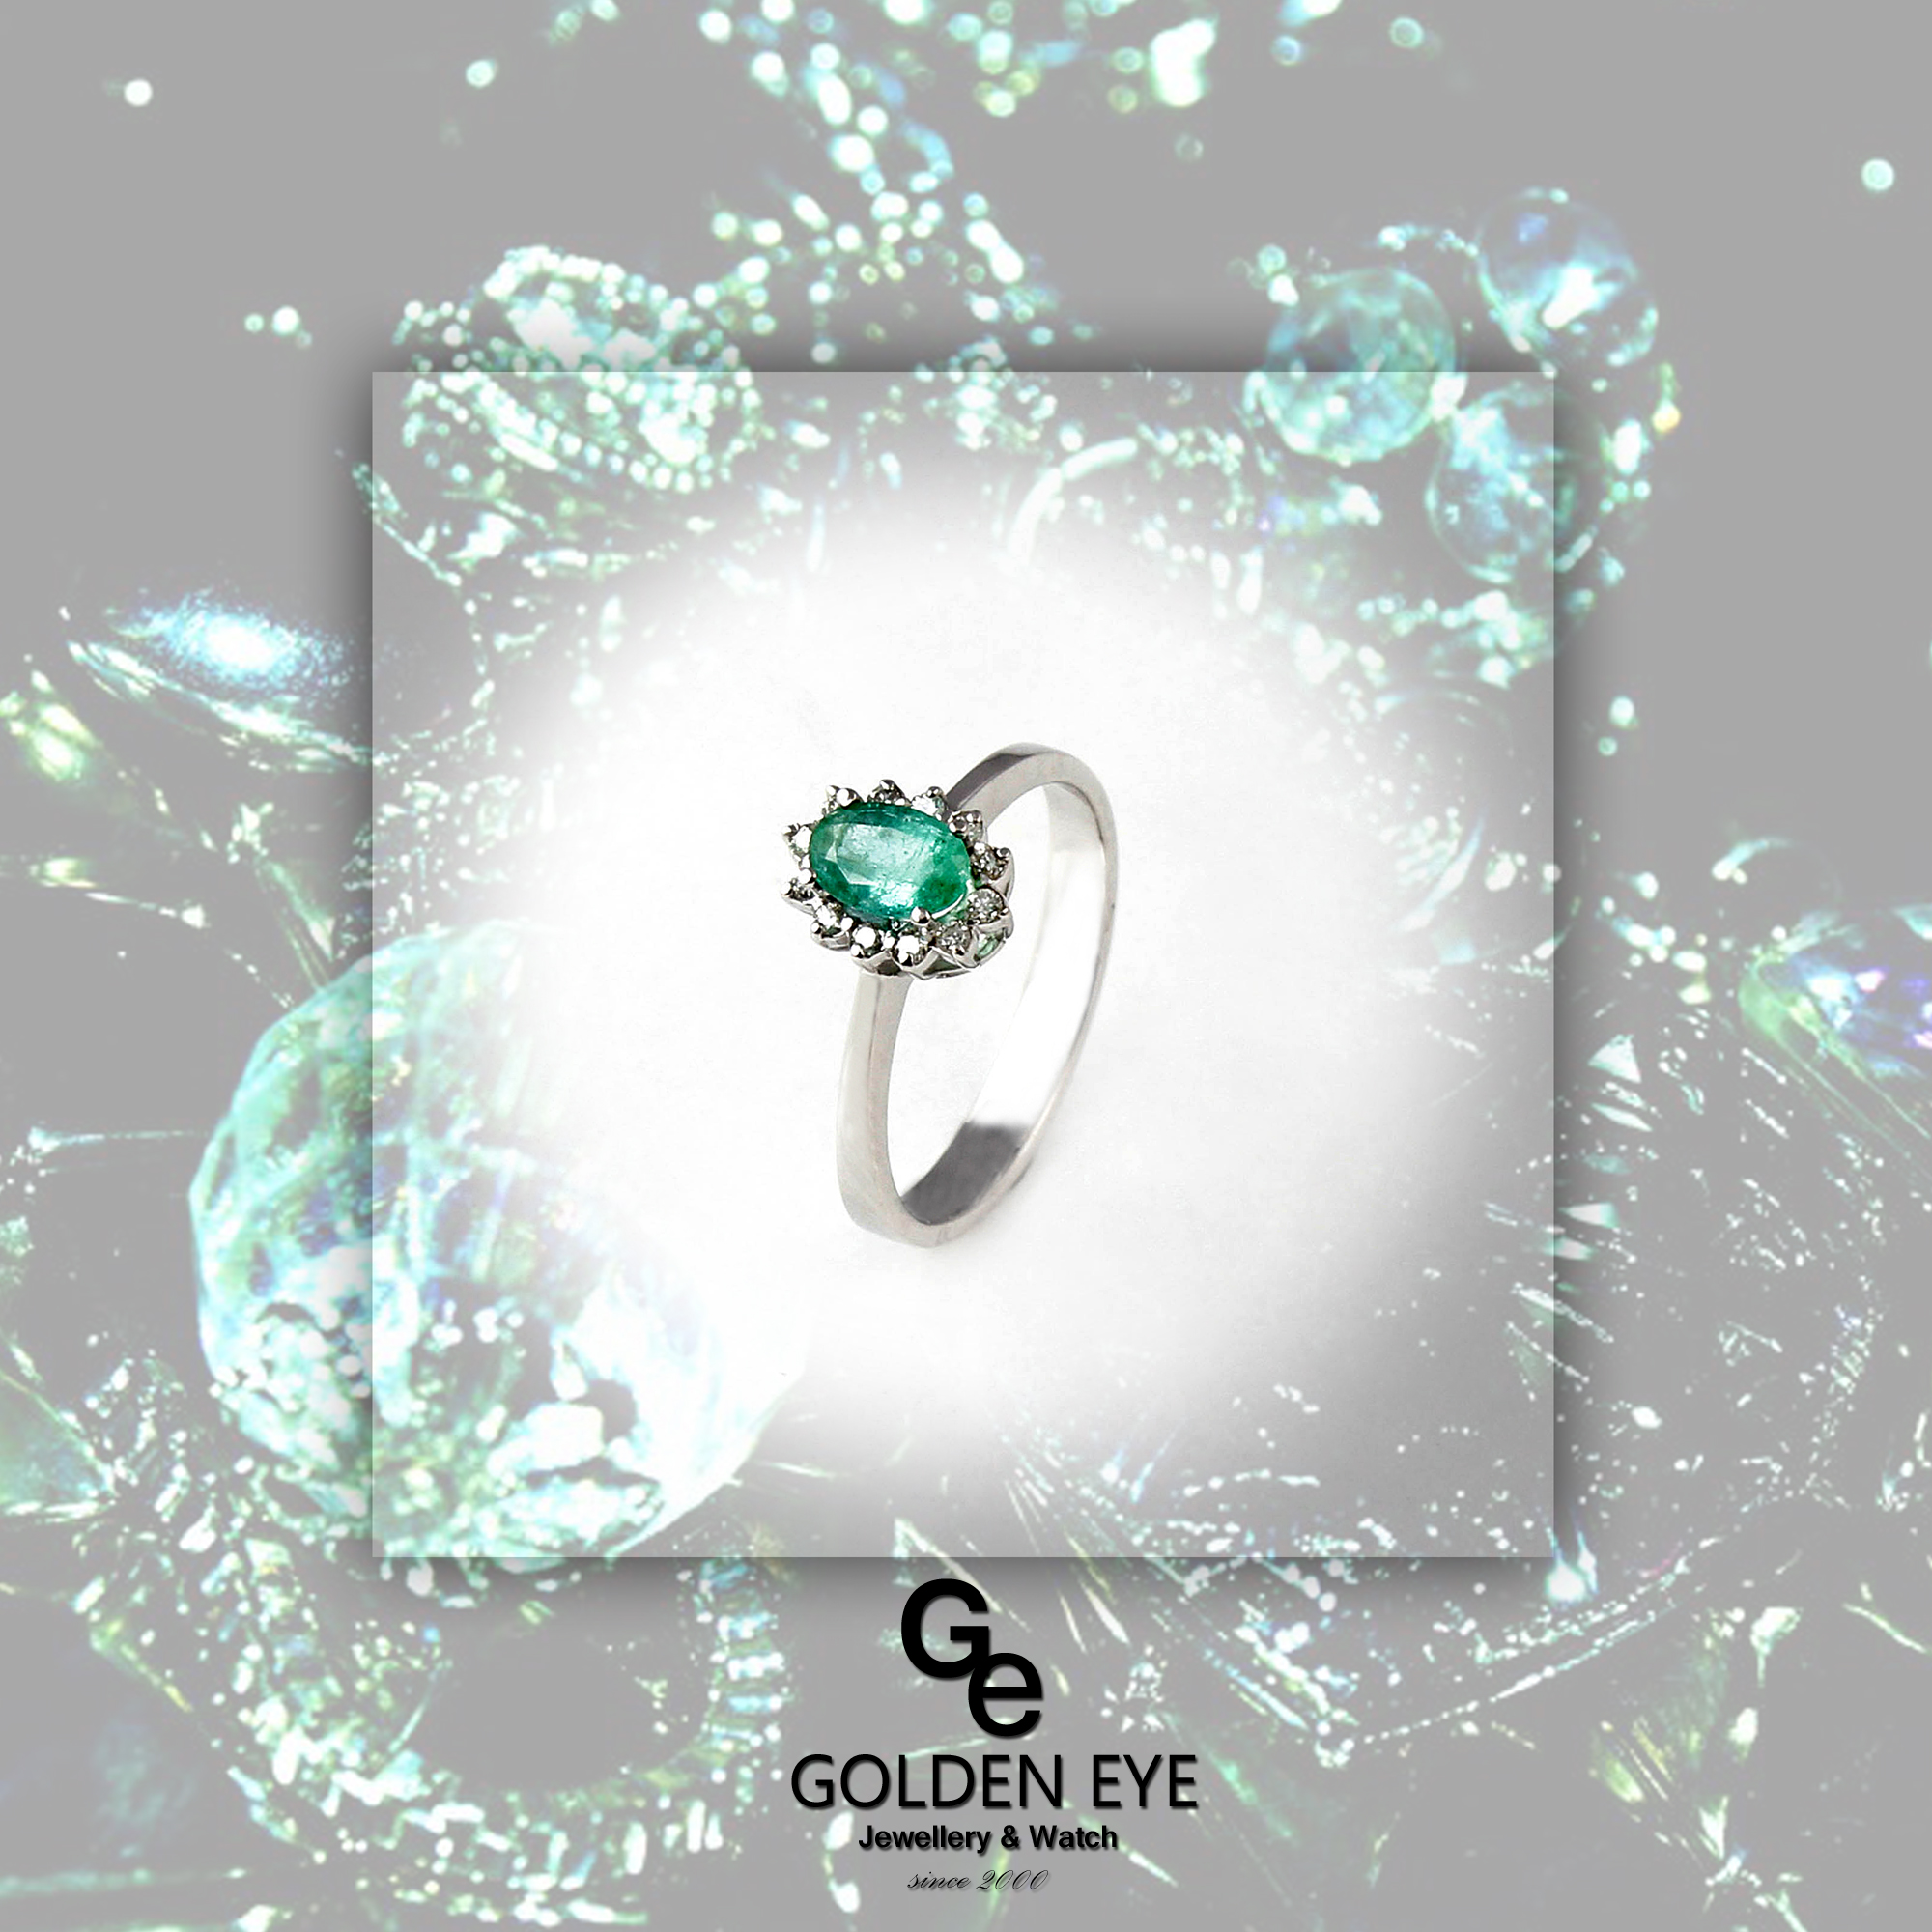 R035A hvid guld Ring med Emerald og diamanter